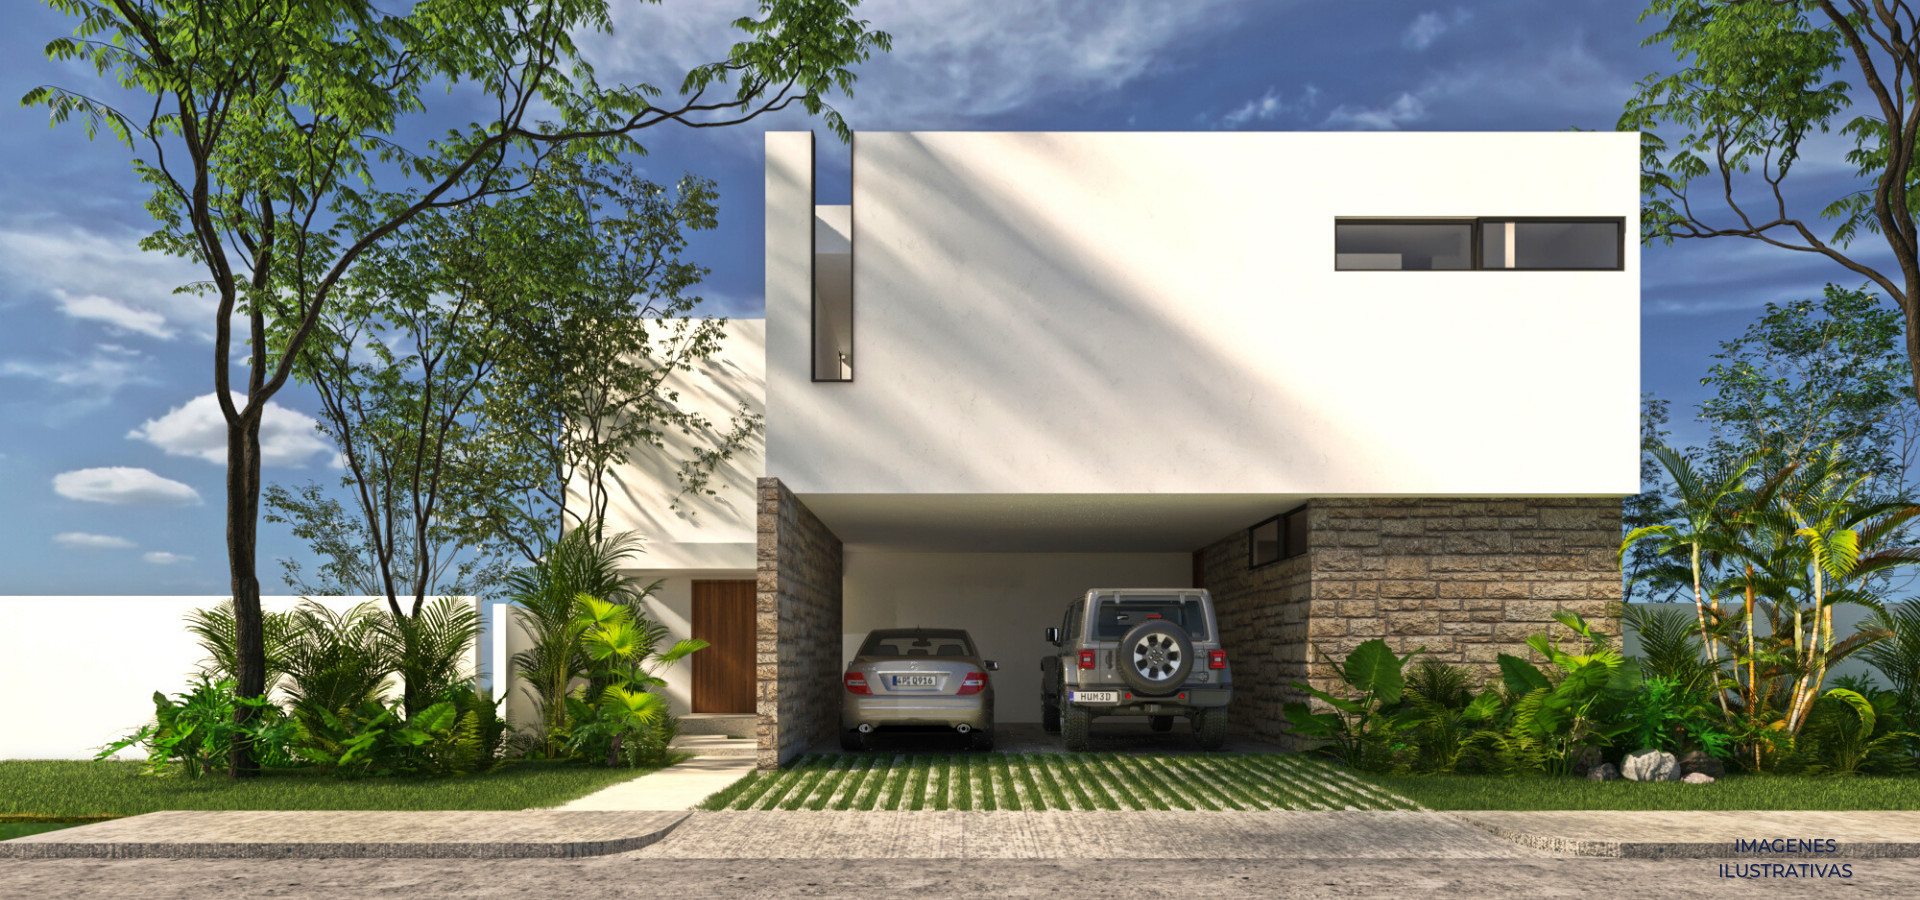 Venta de casa en Residencial Kinish, Mérida Yucatán. Mod. 125. NPE-384